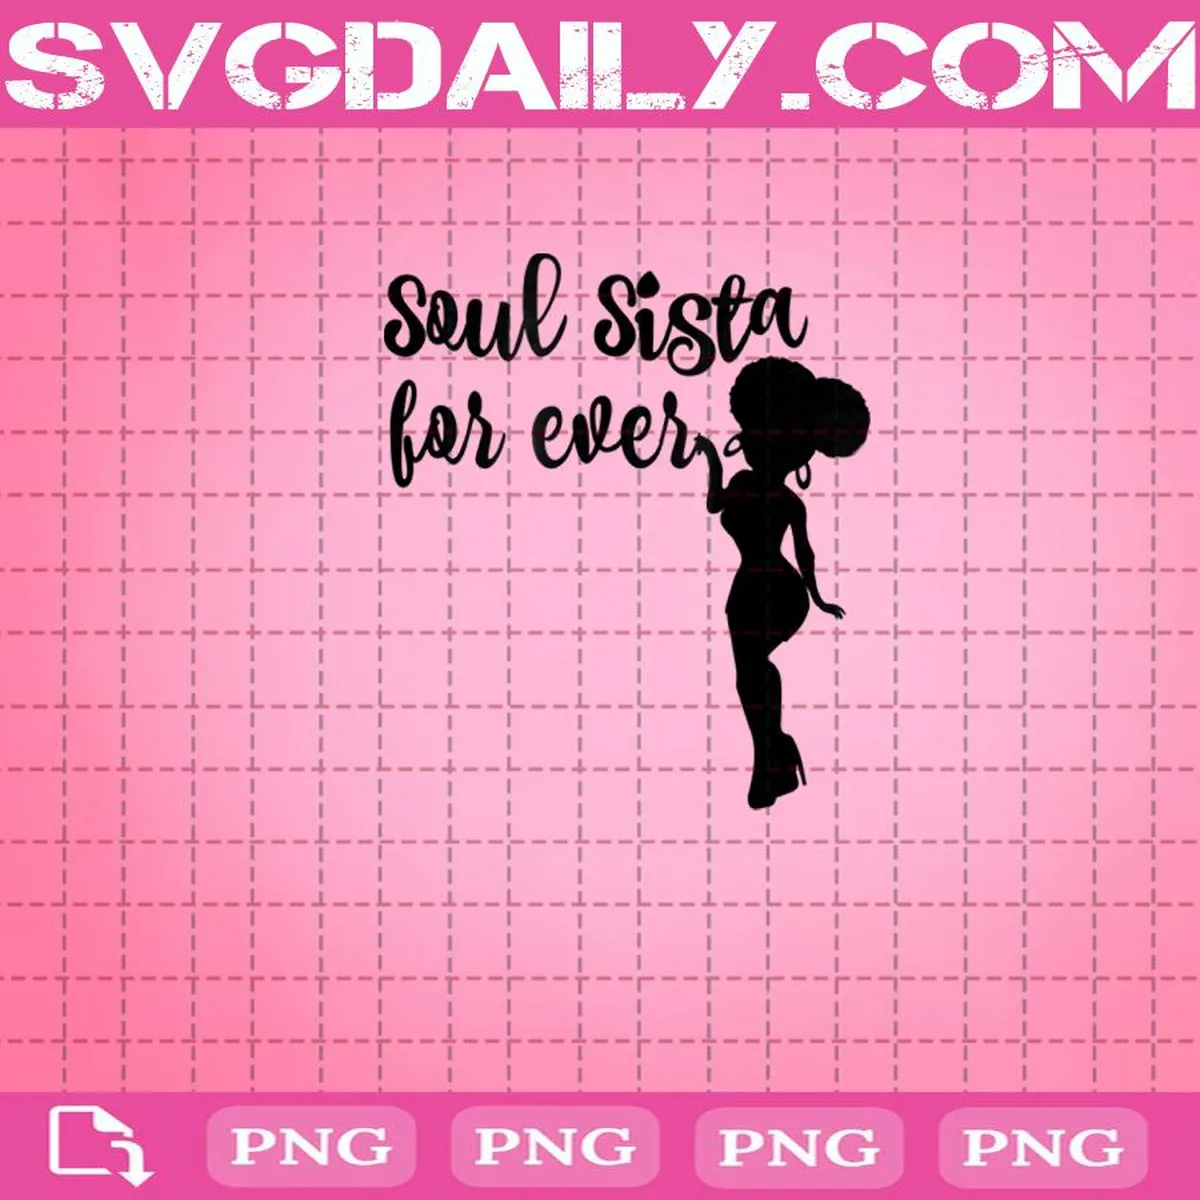 Soul Sista For Ever Png, Soul Sista Png, Sistas Sisters Png, Melanin Girls Png, Black Sistas Png, Afro Girl Png, Black Girl Png